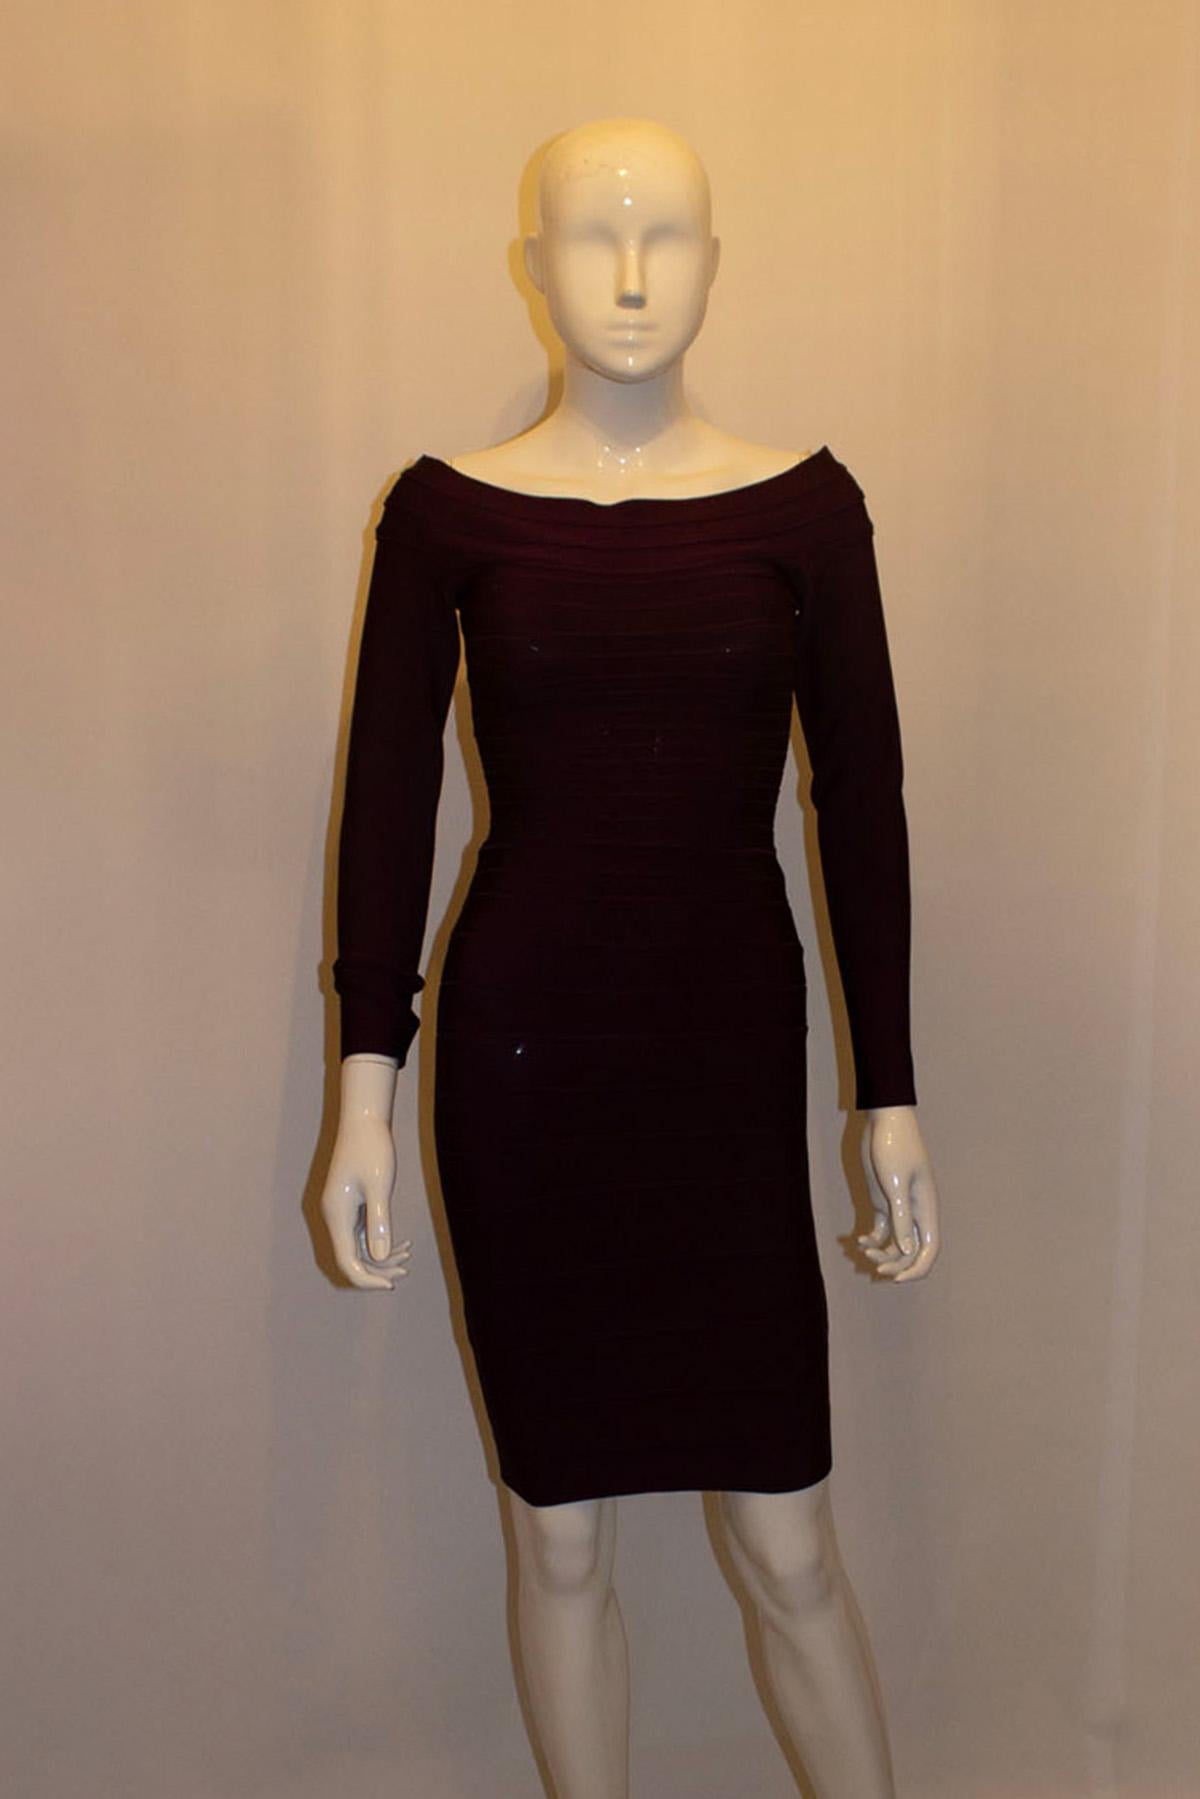 Une robe chic pour l'automne. Une robe de couleur aubergine de Herve Leger, numéro 00248958. La robe présente une encolure bateau, une fermeture éclair centrale au dos et des manches longues.
Taille xs, mesures Buste jusqu'à 33'', longueur 35''.